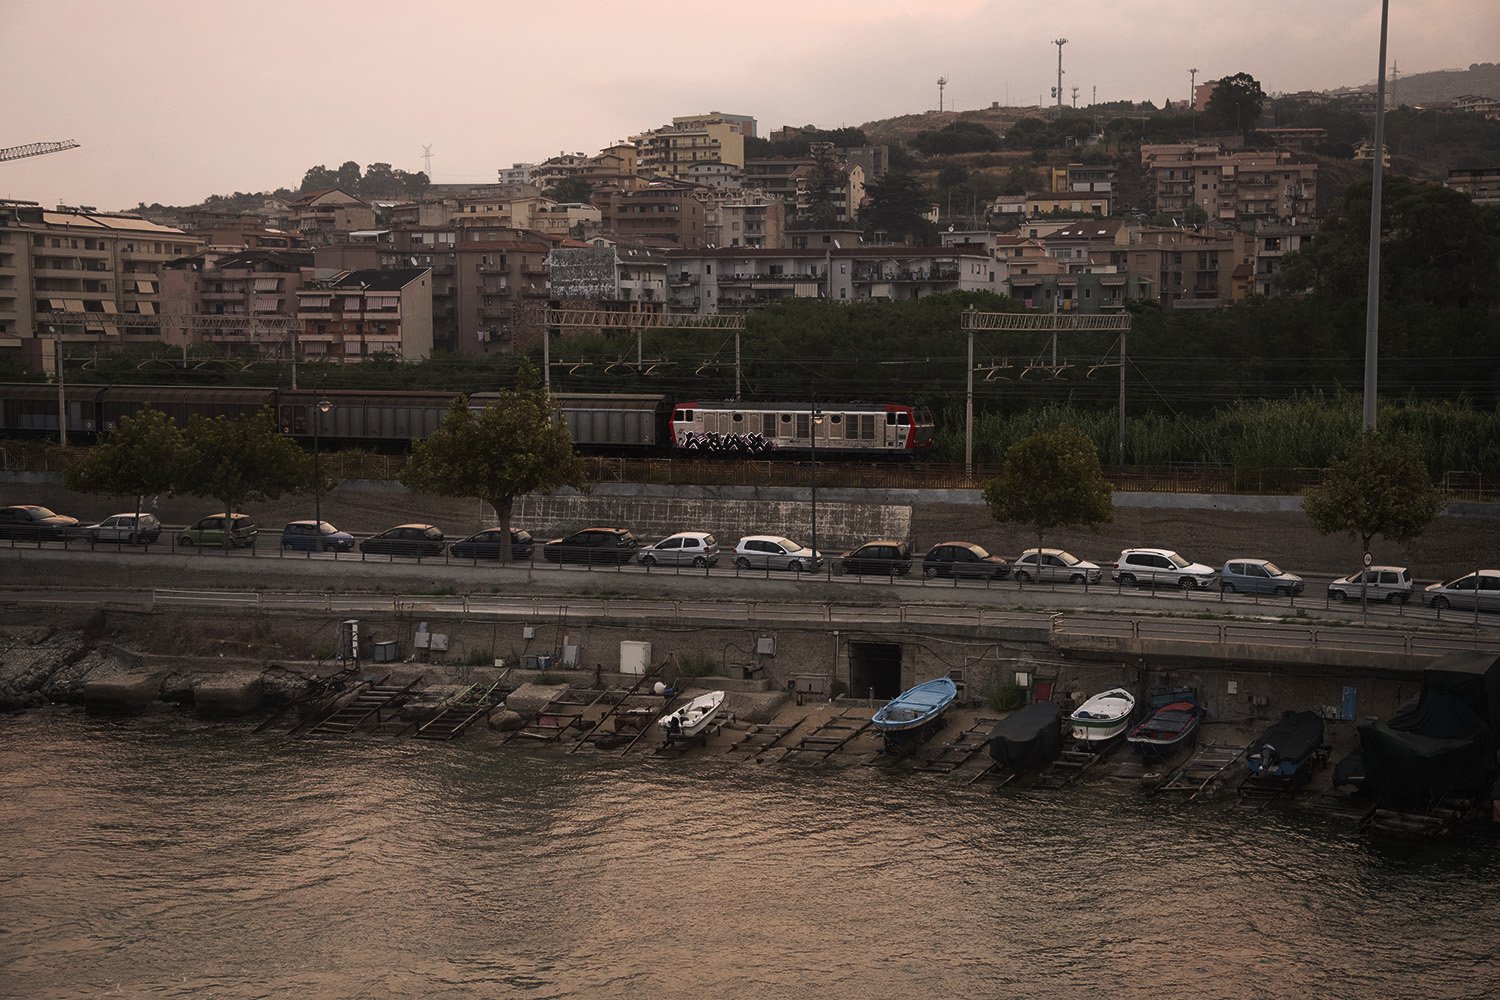  Linea ferroviaria con un unico binario, nella tratta di circa 90 chilometri Messina-Palermo. Messina 2023.La popolazione ne contesta l’obsolescenza.  